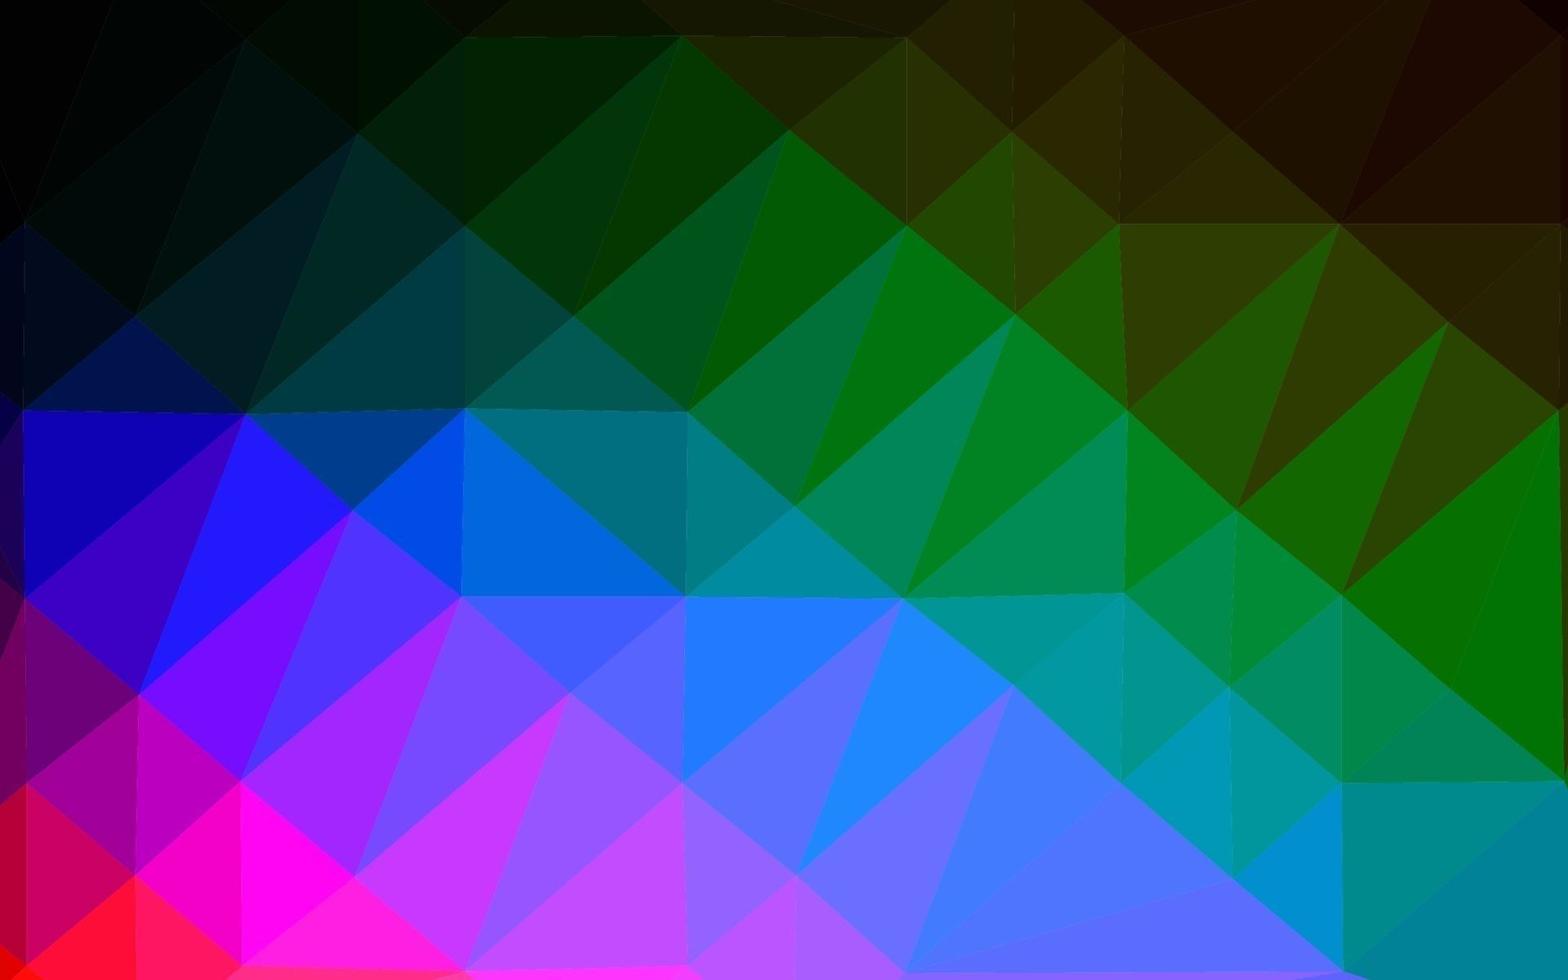 dunkles mehrfarbiges, abstraktes polygonales Layout des Regenbogenvektors. vektor